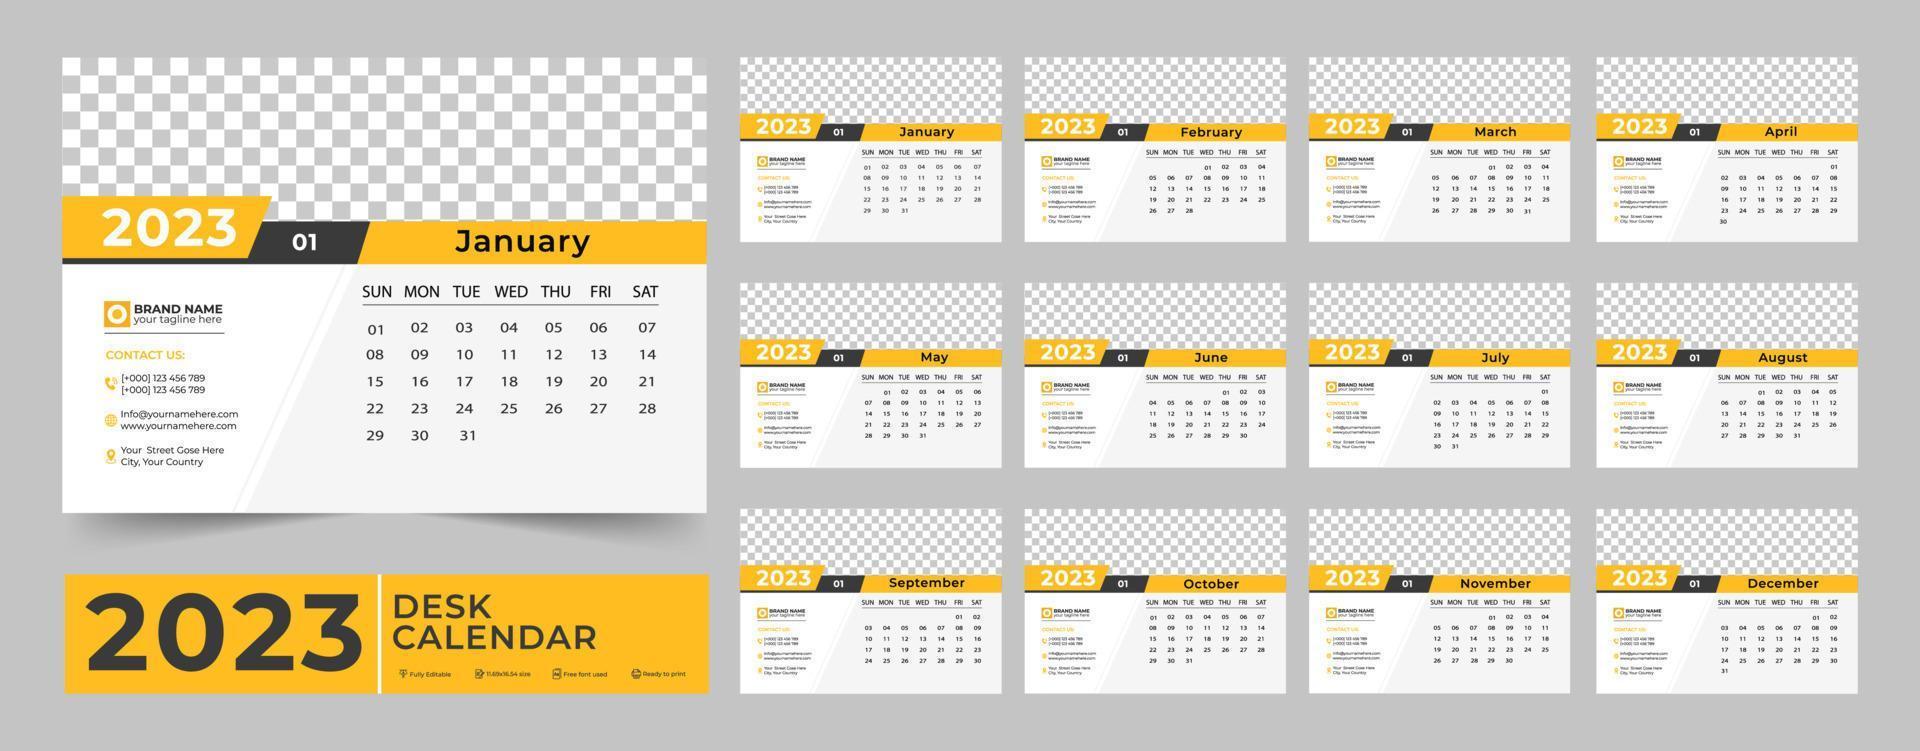 kalender 2023 planerare företags- mall design uppsättning. vecka börjar på måndag. mall för årlig kalender 2023. en gång i månaden kalender mall för 2023 år vektor